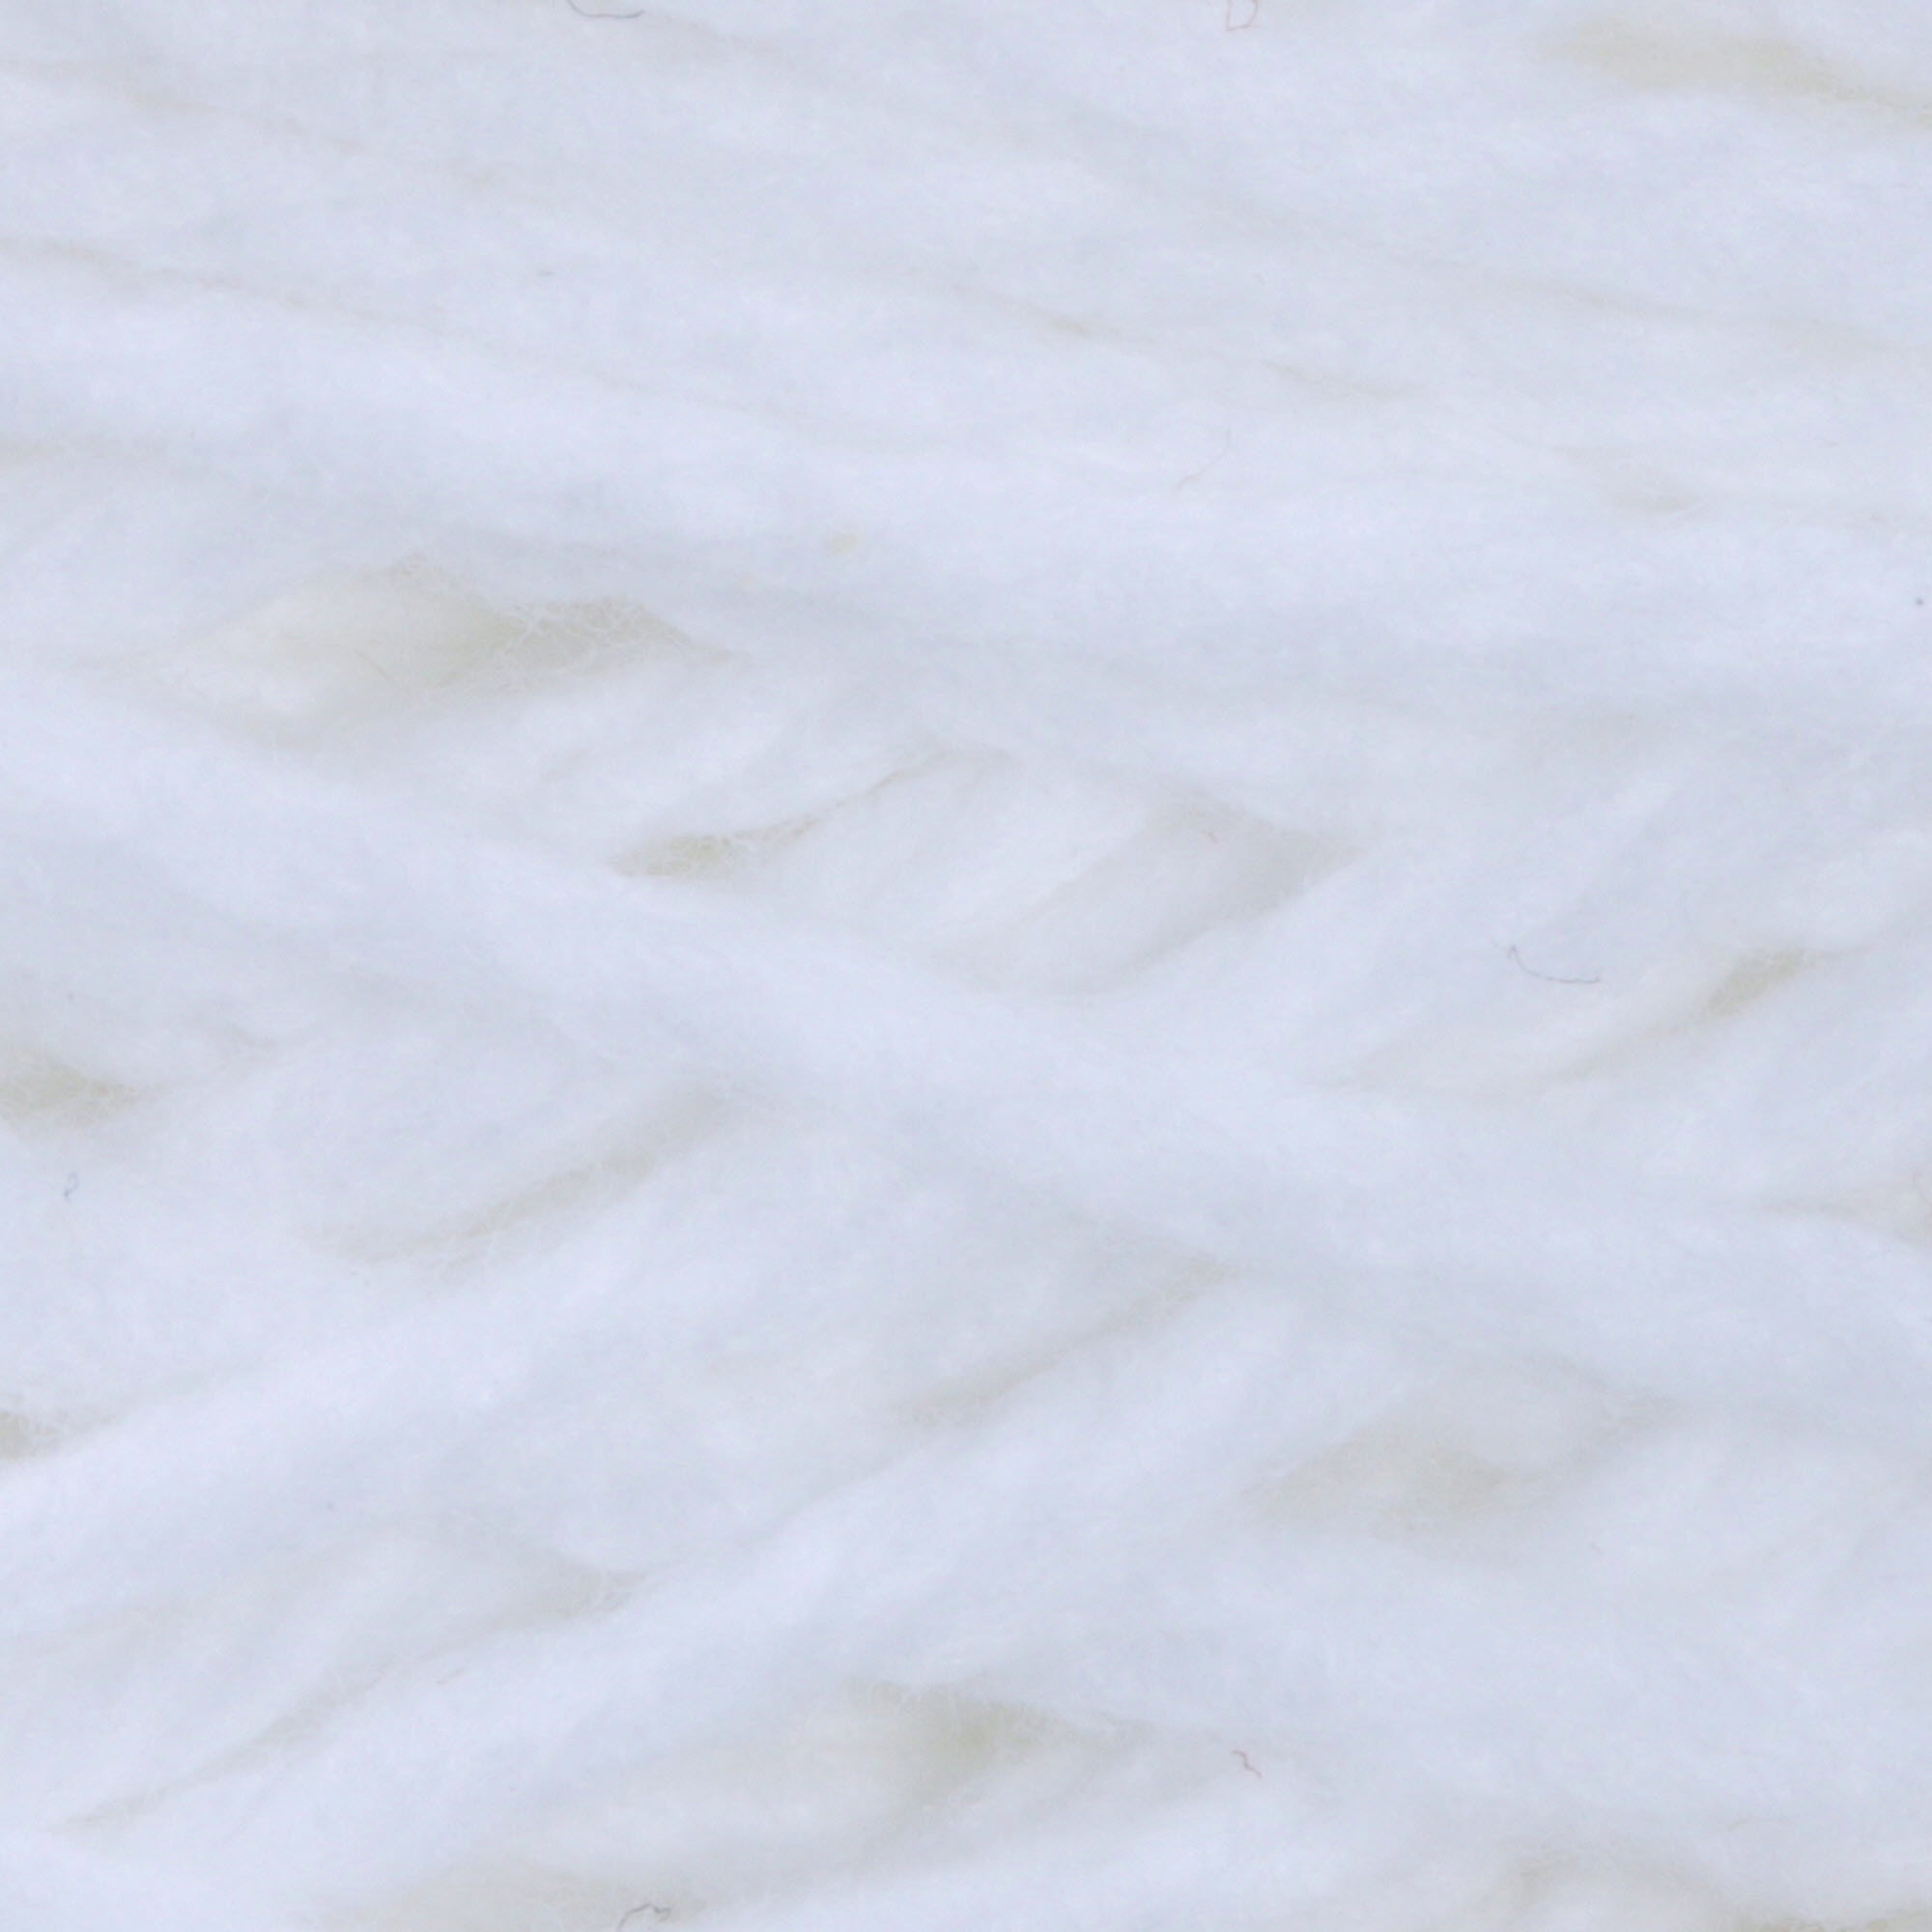 Lily Sugar'n Cream Cone 4 Medium Cotton Yarn, White 14oz/400g, 706 Yards - image 3 of 3